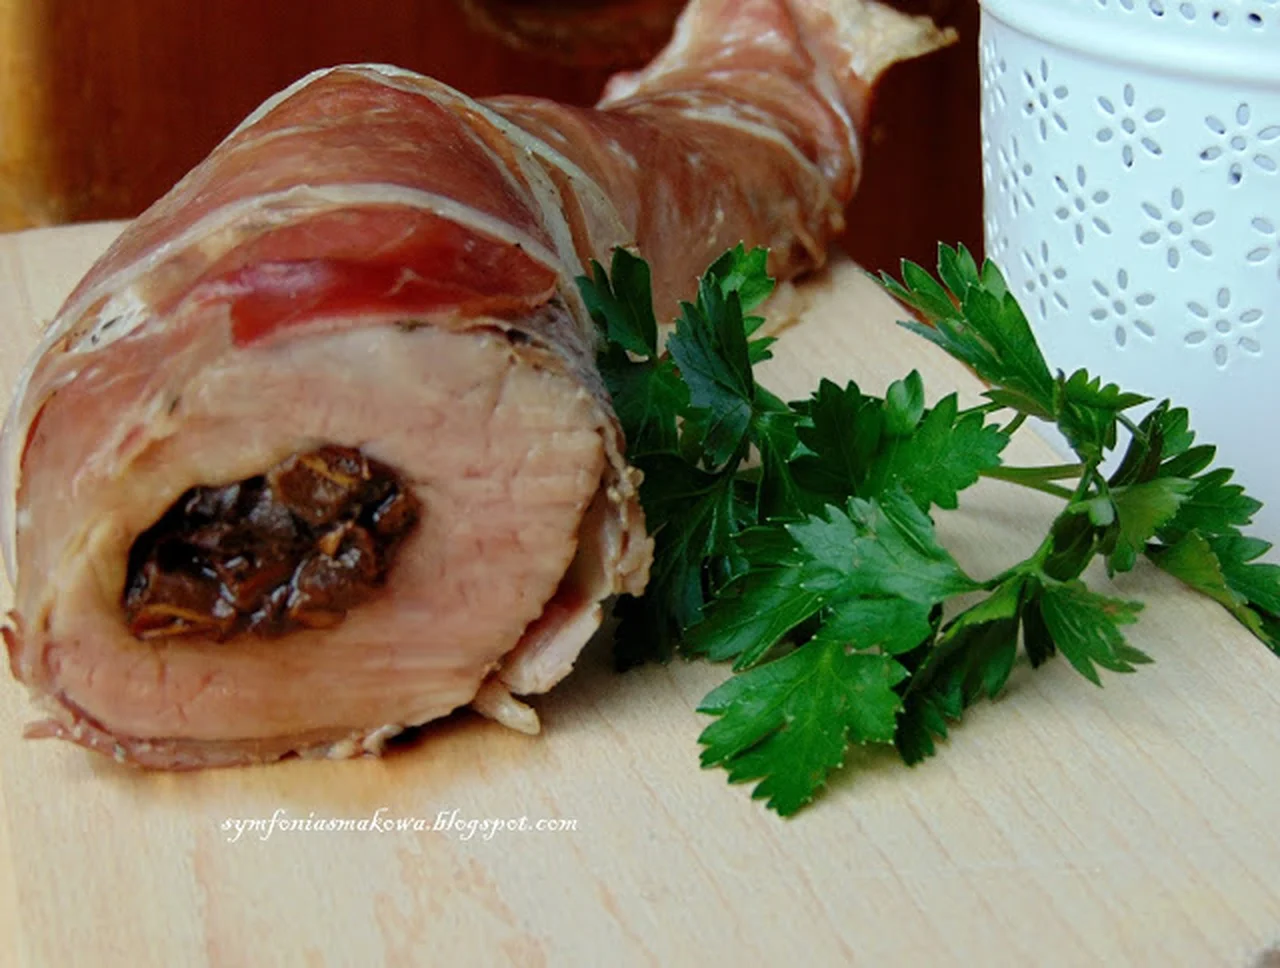 Polędwiczka wieprzowa faszerowana suszonymi borowikami i zawinięta w szynkę parmeńską.